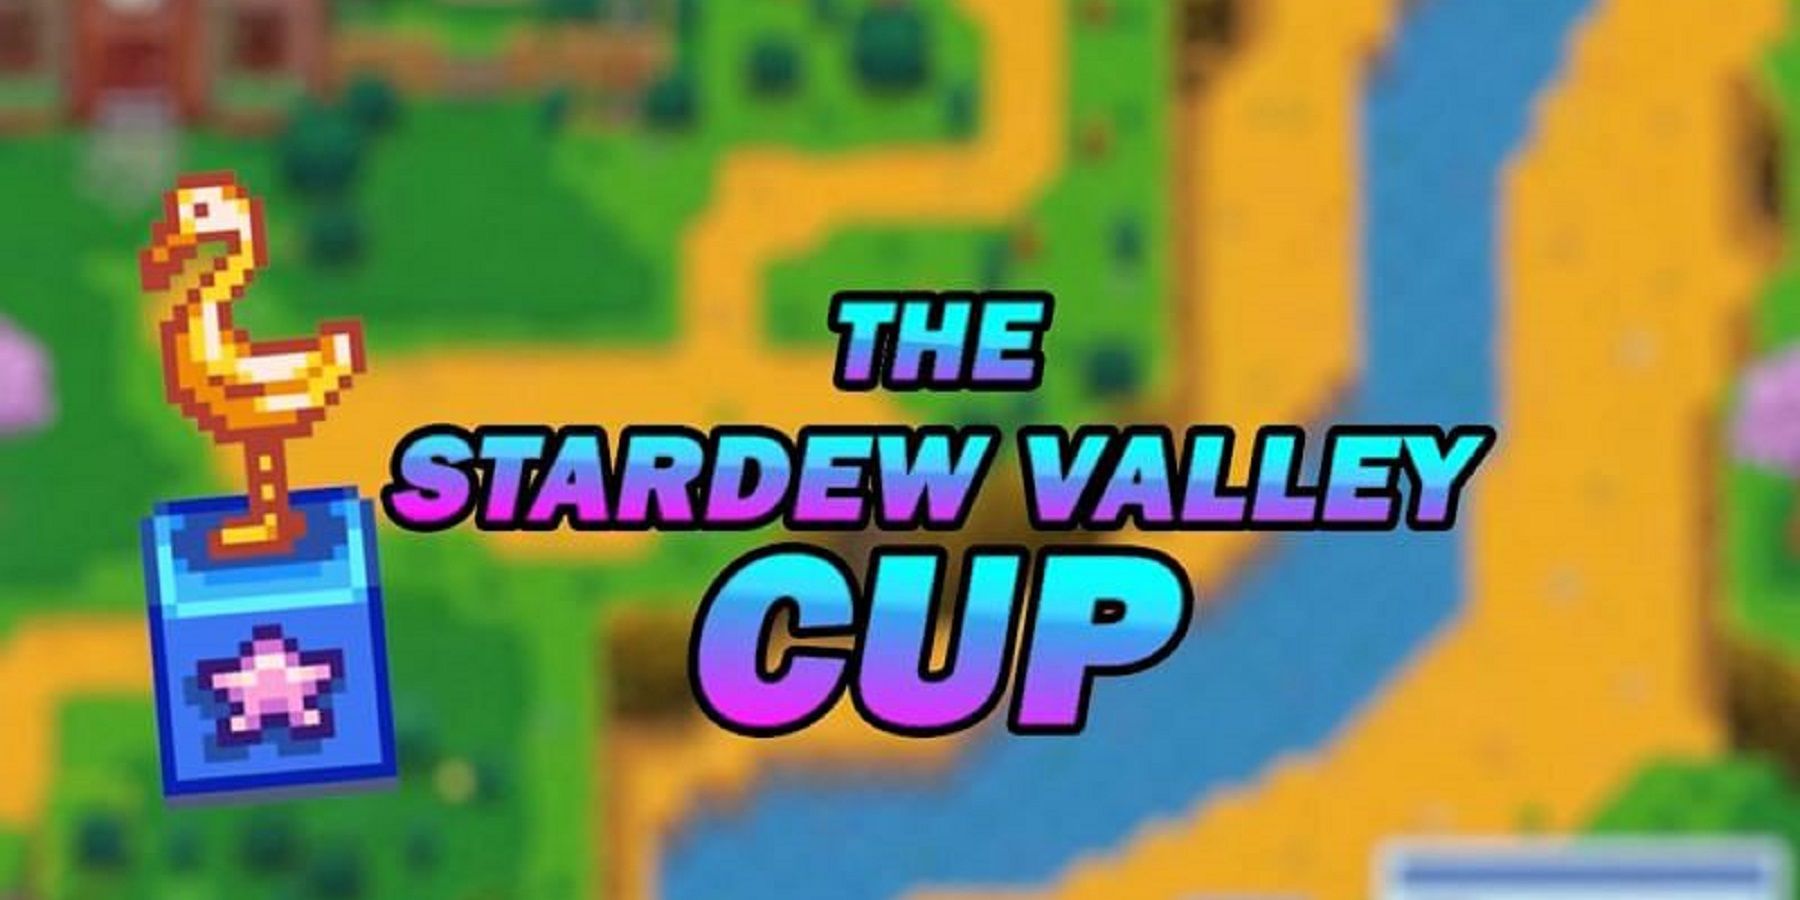 1 වන නිල Stardew Valley Cup ප්‍රධාන කලා විශේෂාංගය